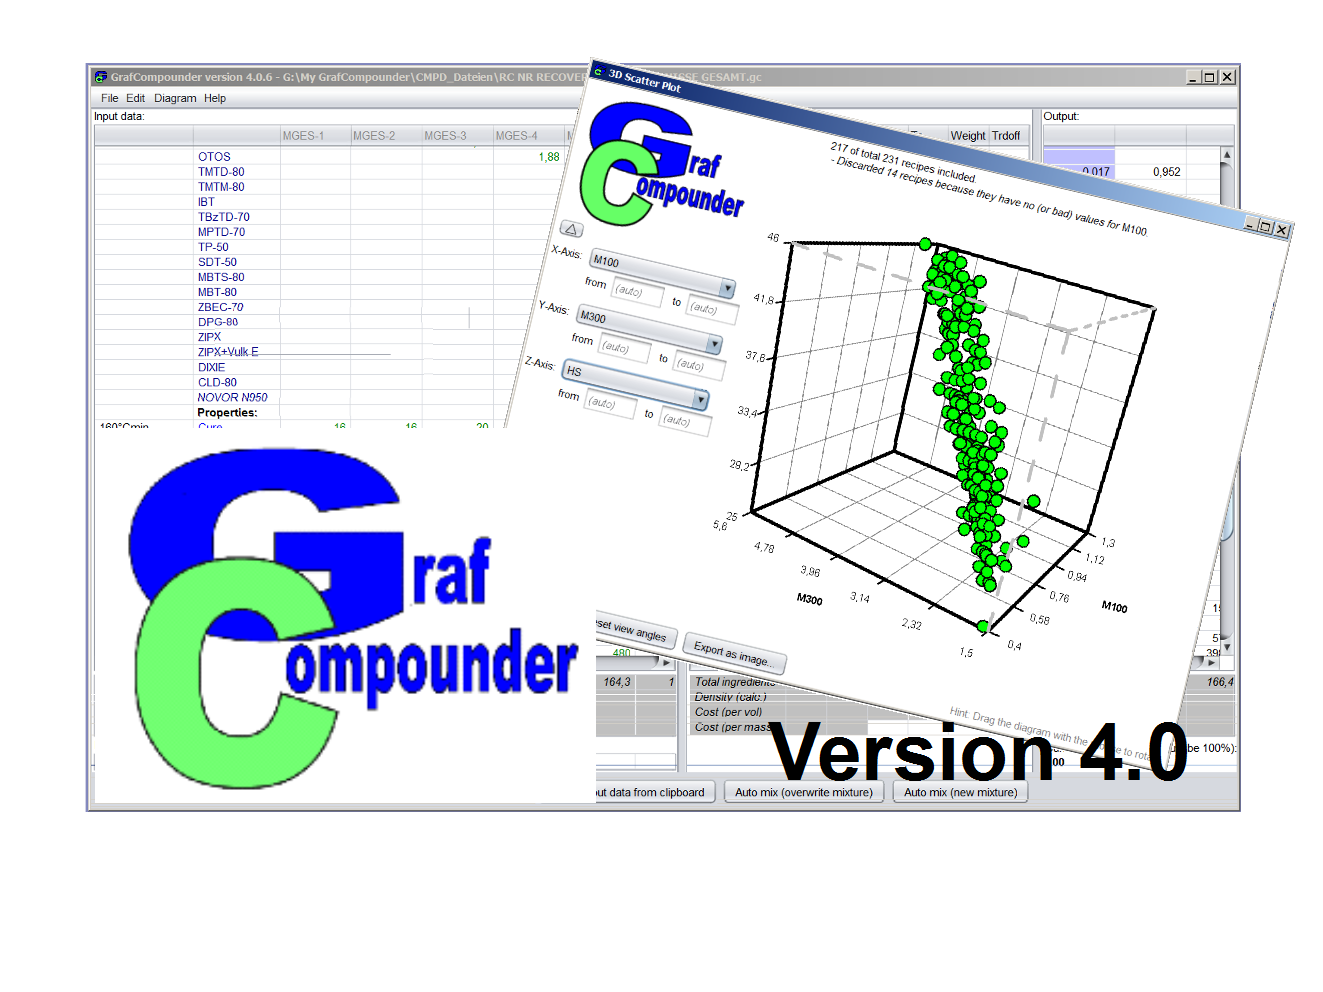 GrafCompounder 4.0